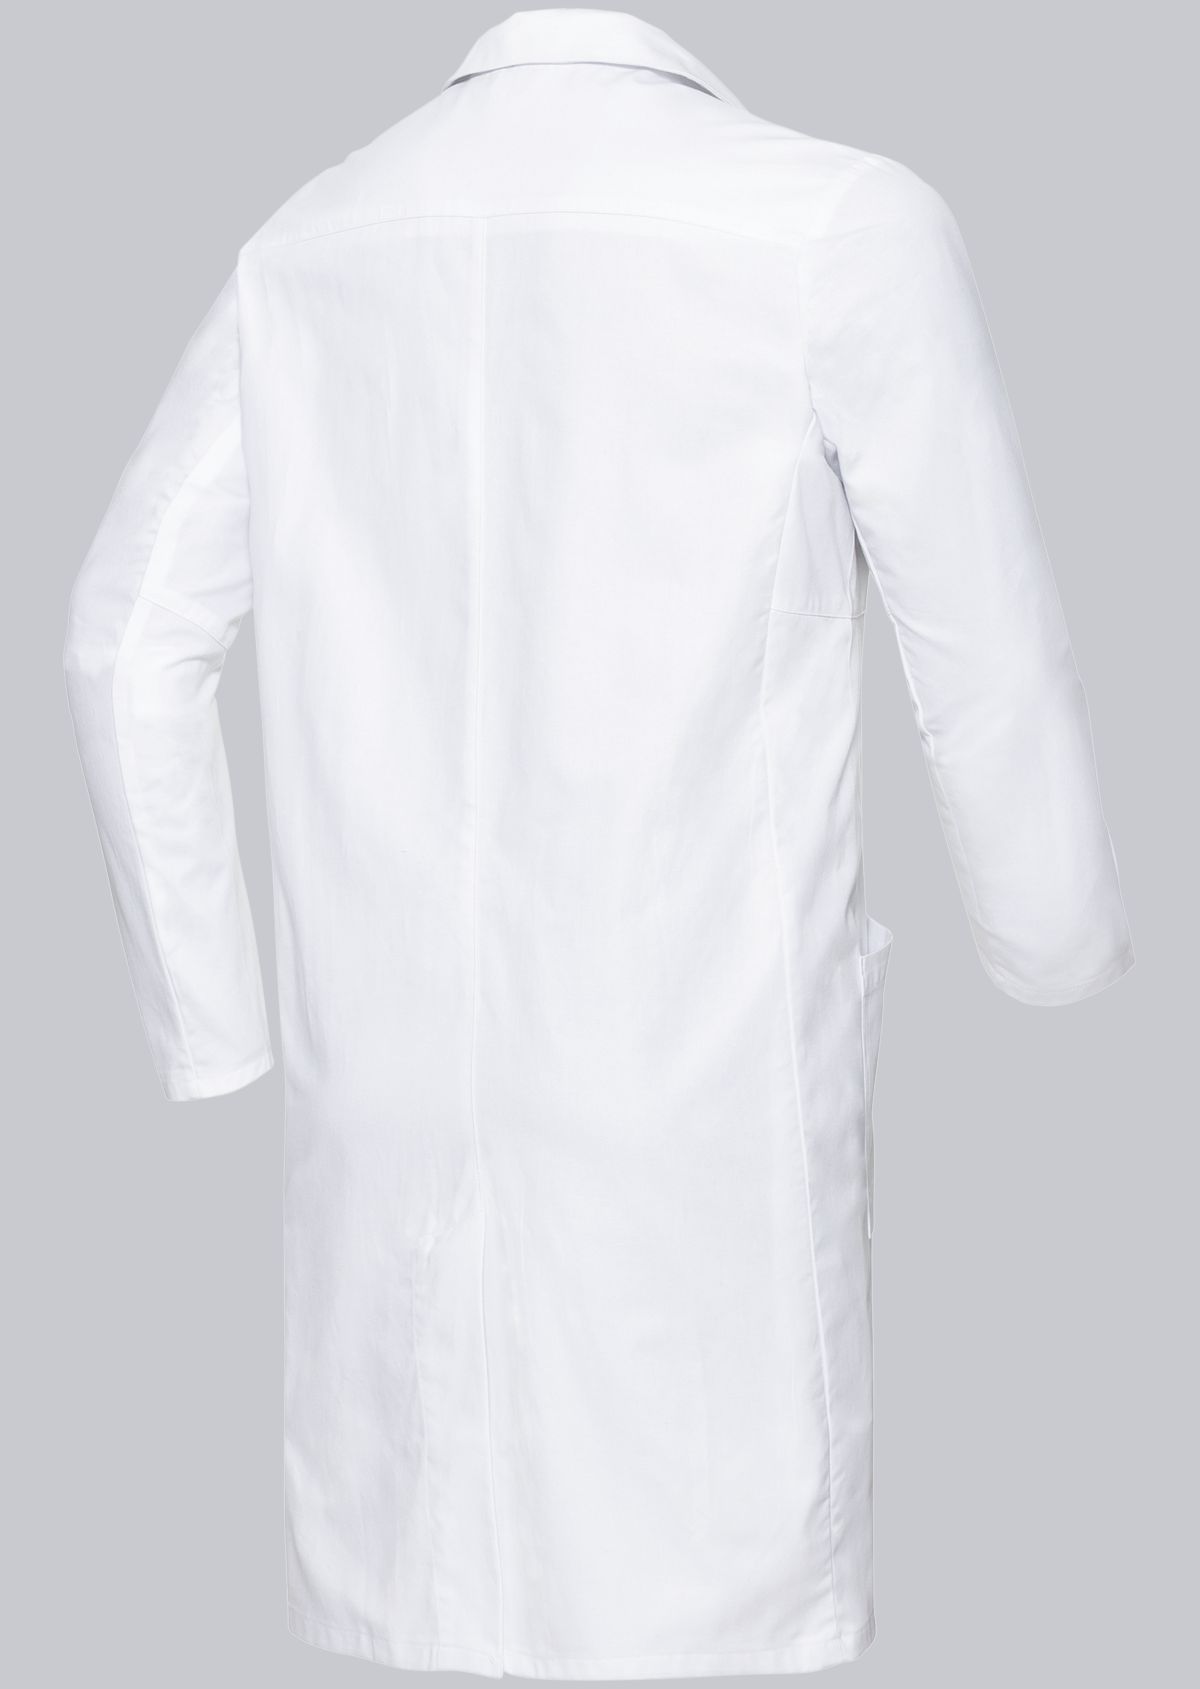 BP® Cotton men's doctor's coat